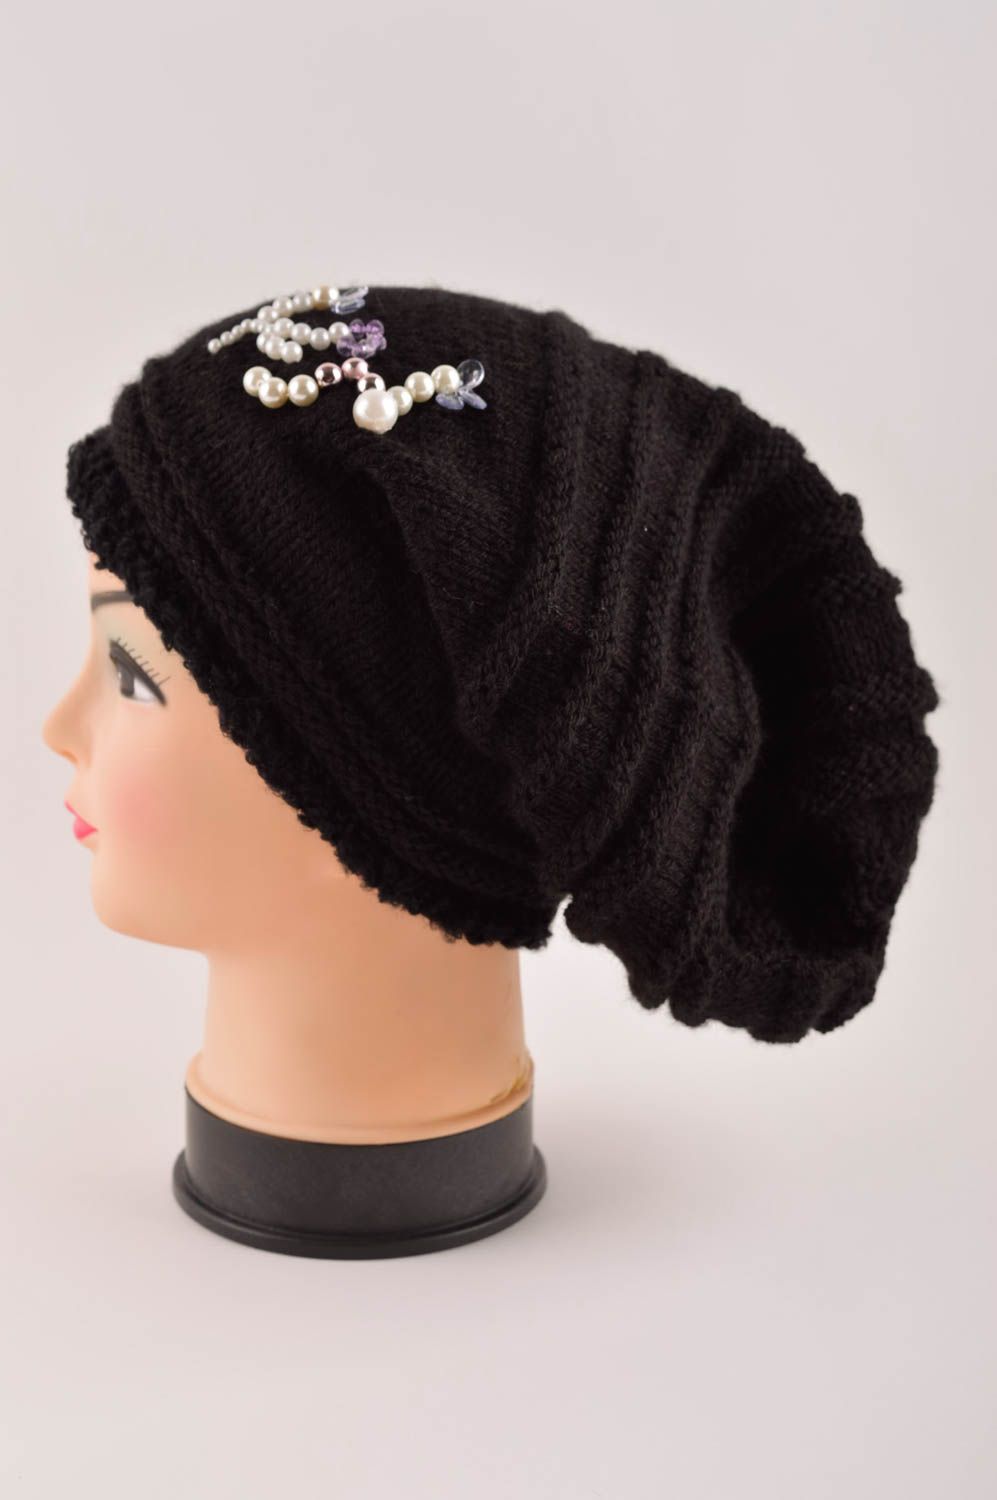 Handmade winter hat designer hat for girl unusual hat crocheted hats for girl photo 3